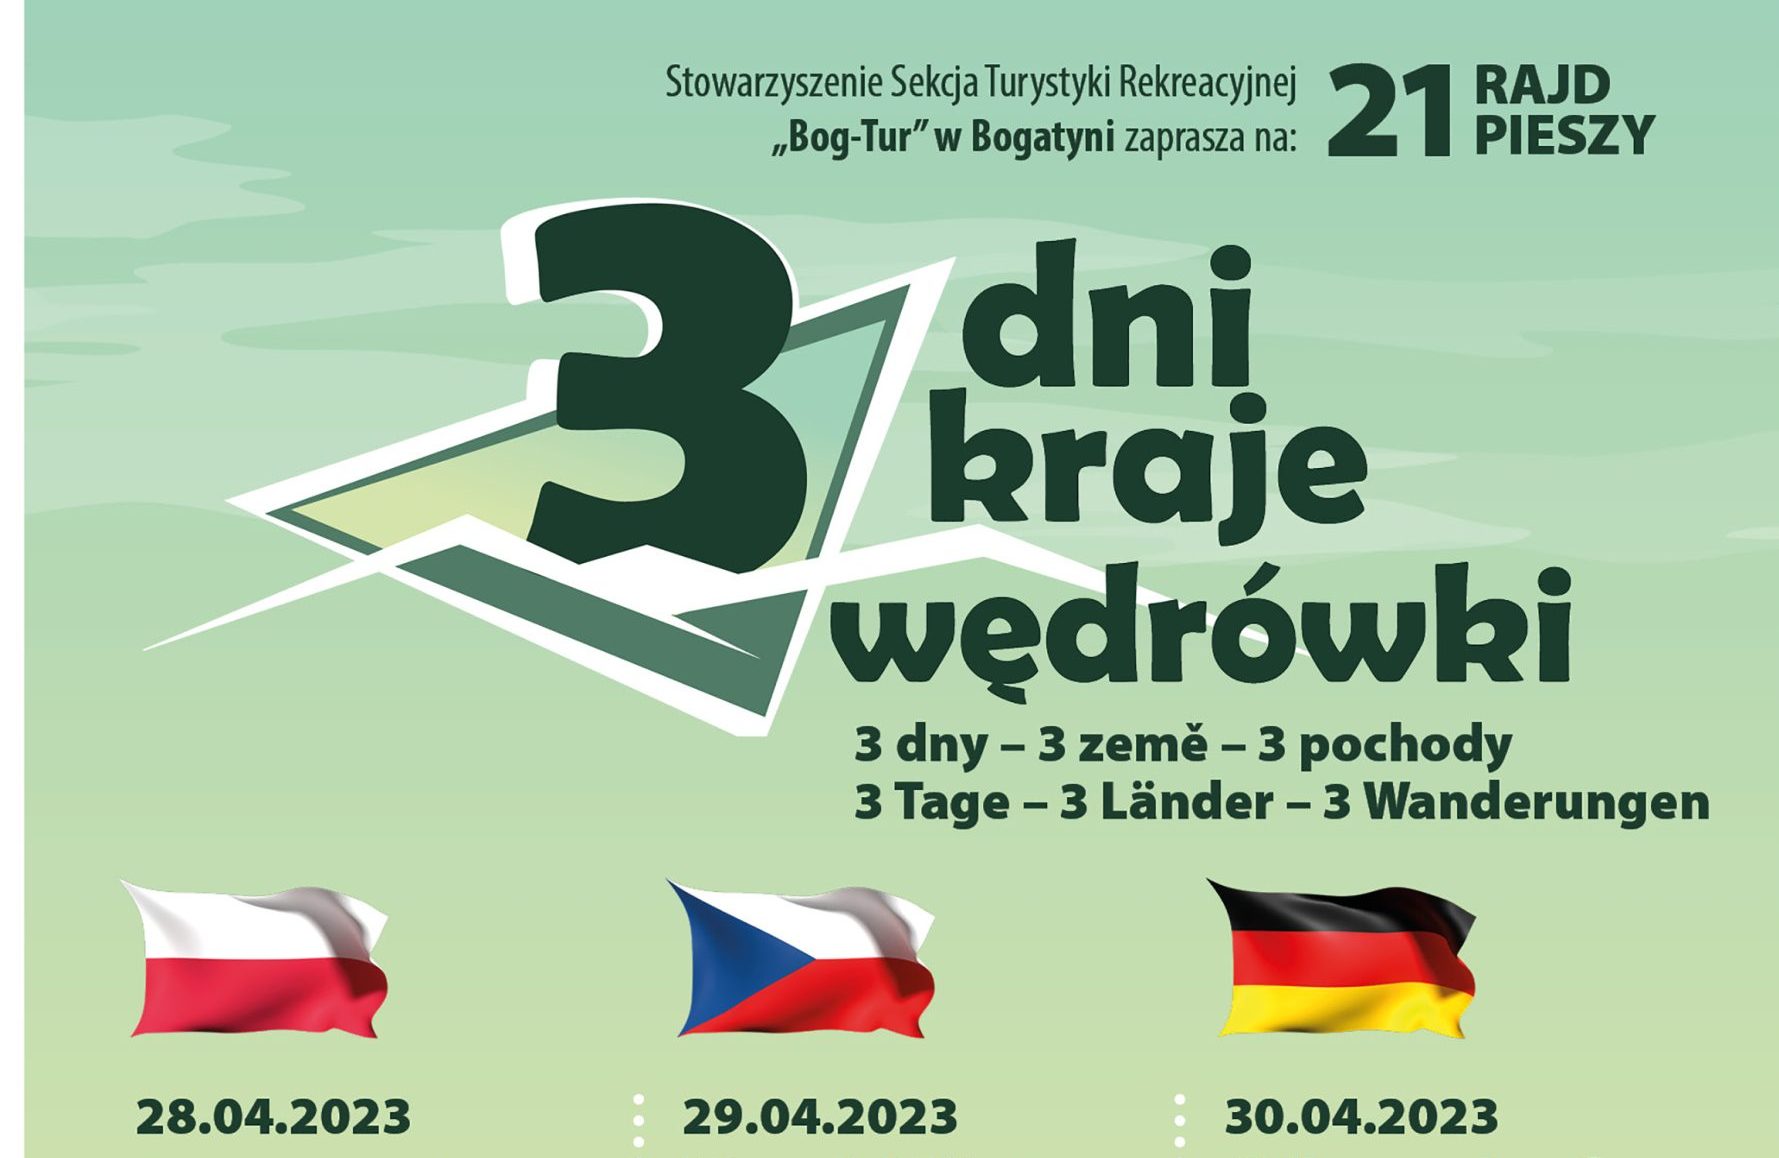 You are currently viewing “3-Dni 3-Kraje 3-Wędrówki” – XXI Rajd Pieszy